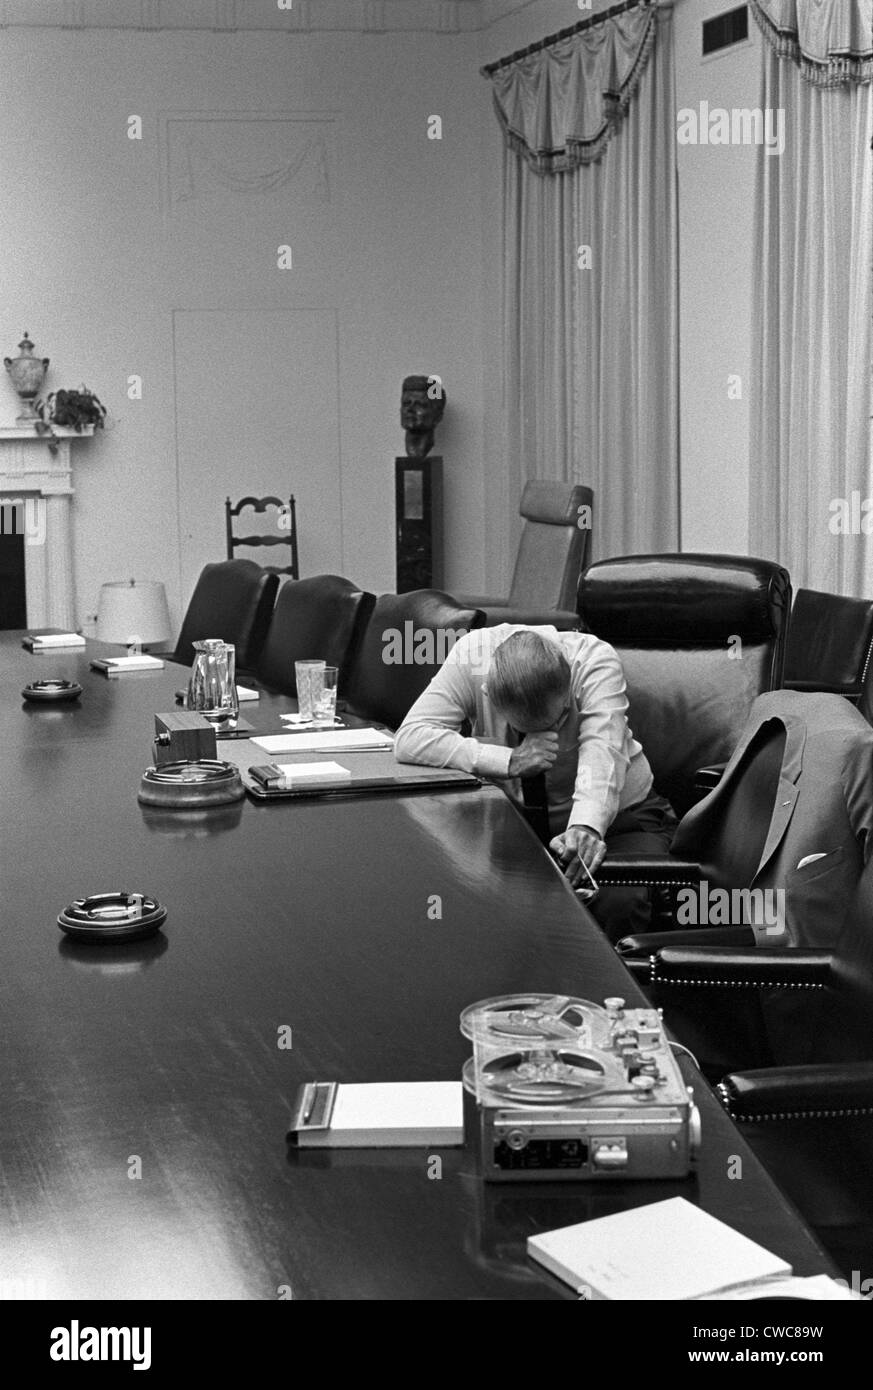 Präsident Johnson erscheint gequälten, als er auf seinem Schwiegersohn Captain Charles Robb aus Vietnam per Band hört. Kabinett-Zimmer Stockfoto